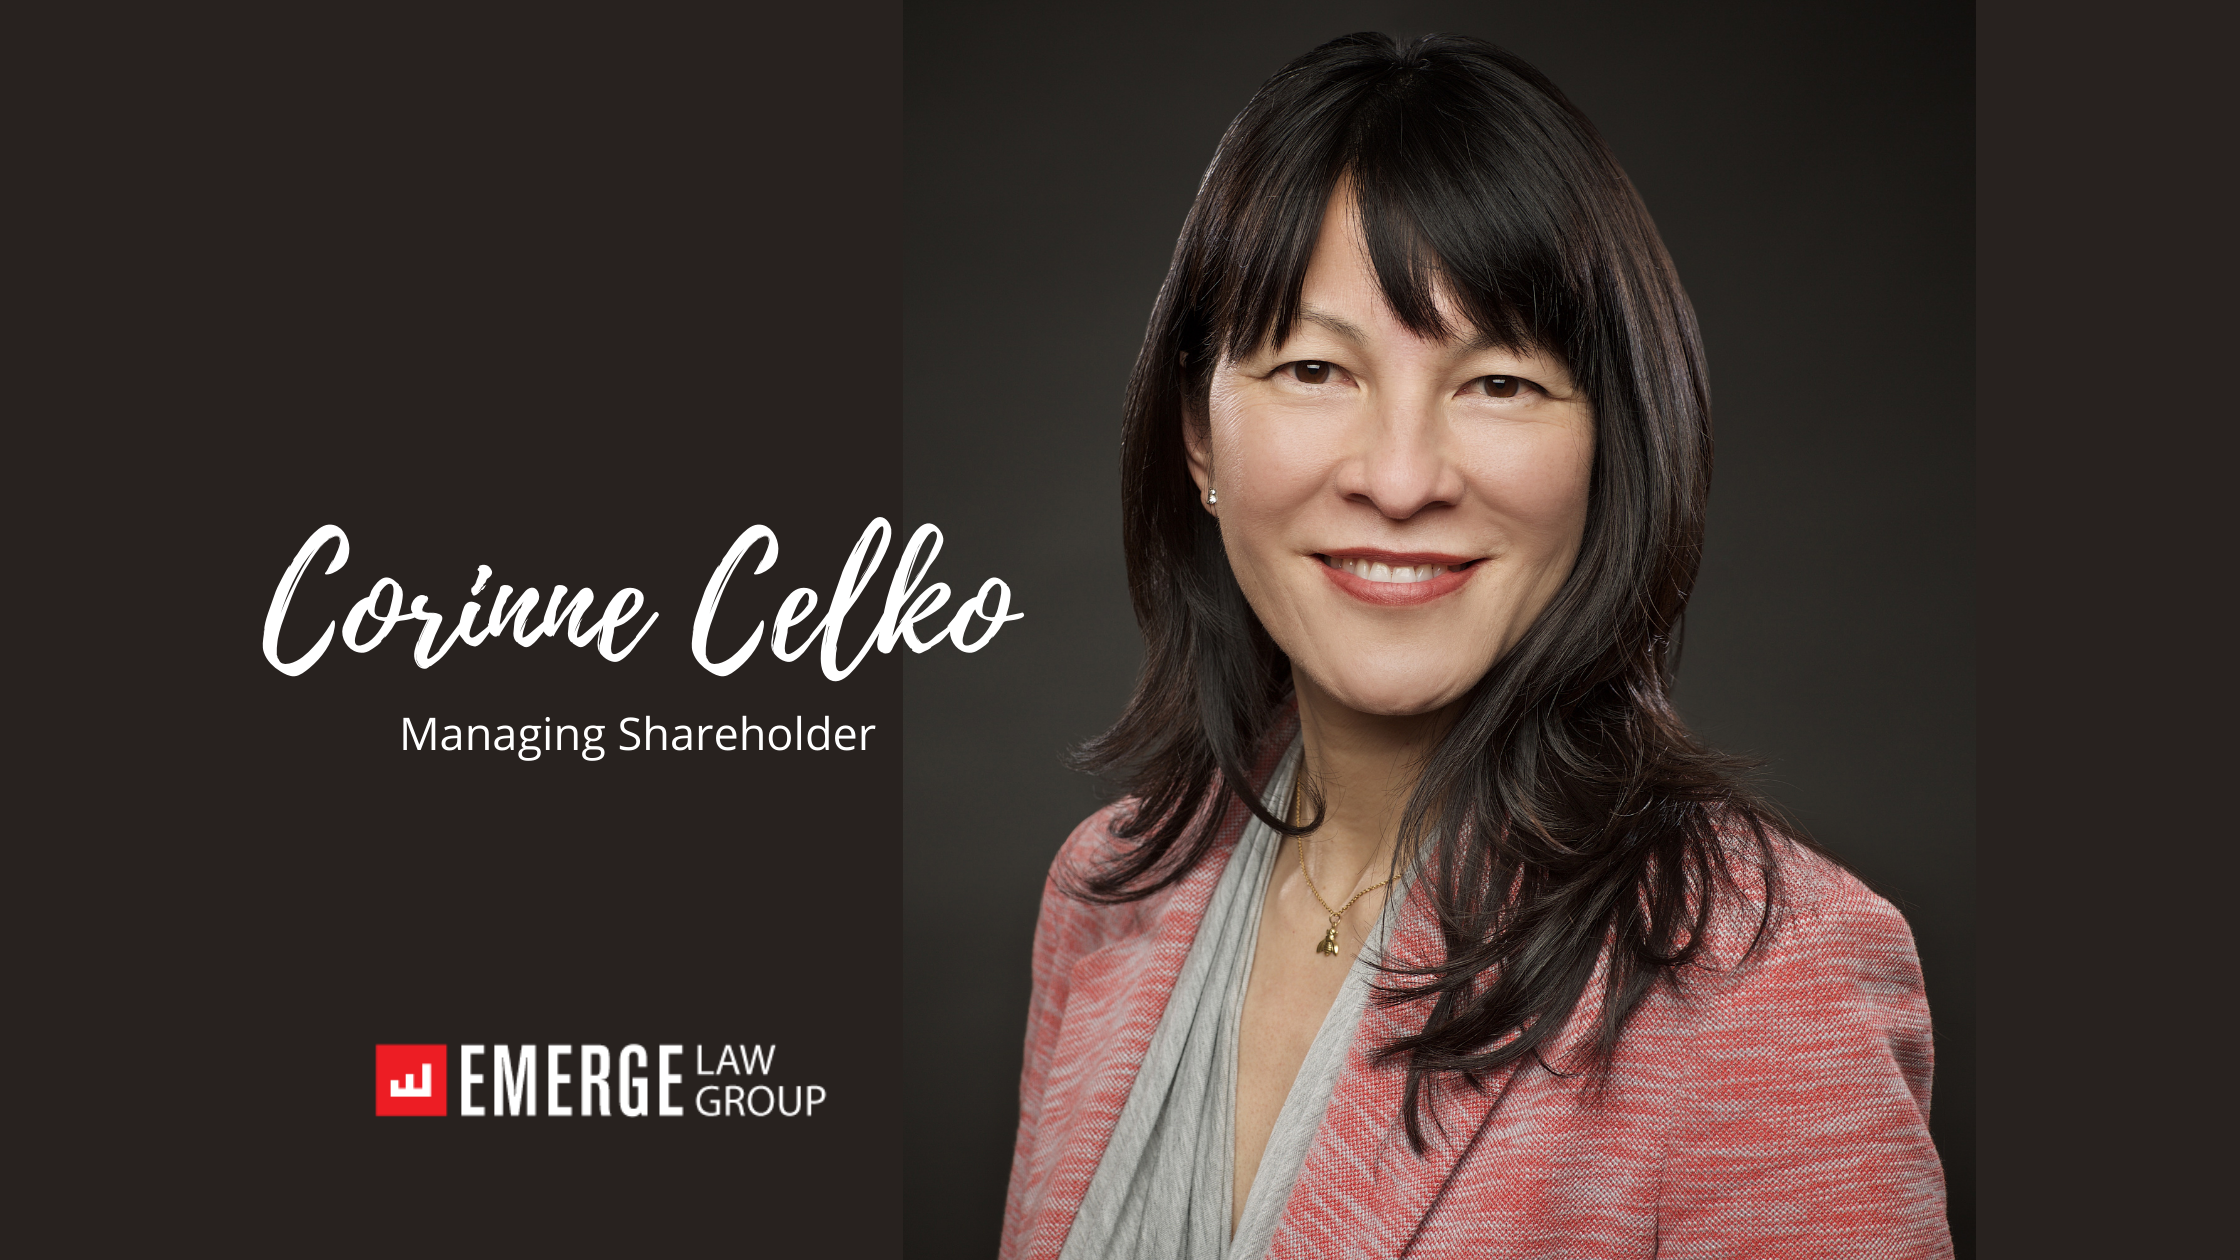 Emerge Law Group Names Corinne Celko Managing Shareholder